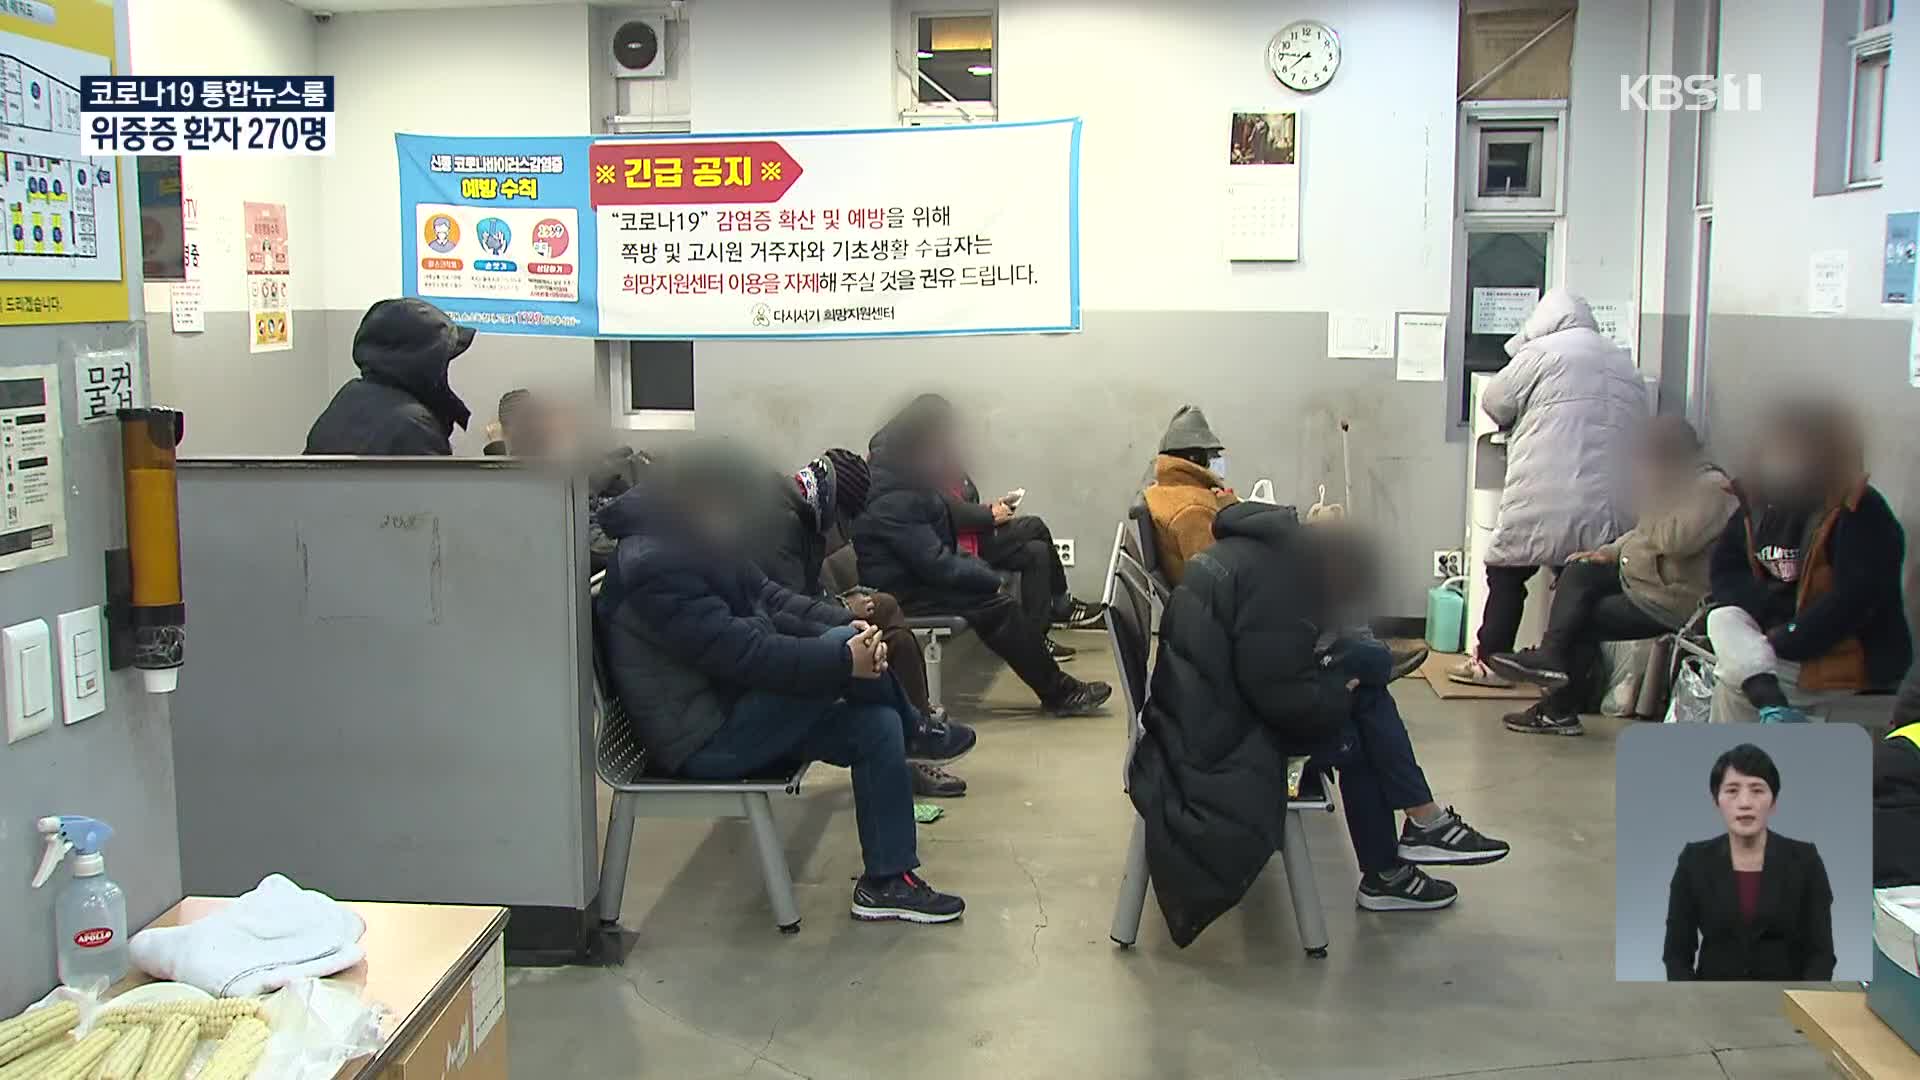 서울역 노숙인 시설에서 5명확진…대전 ‘비인가시설’ 관련 40명 검사